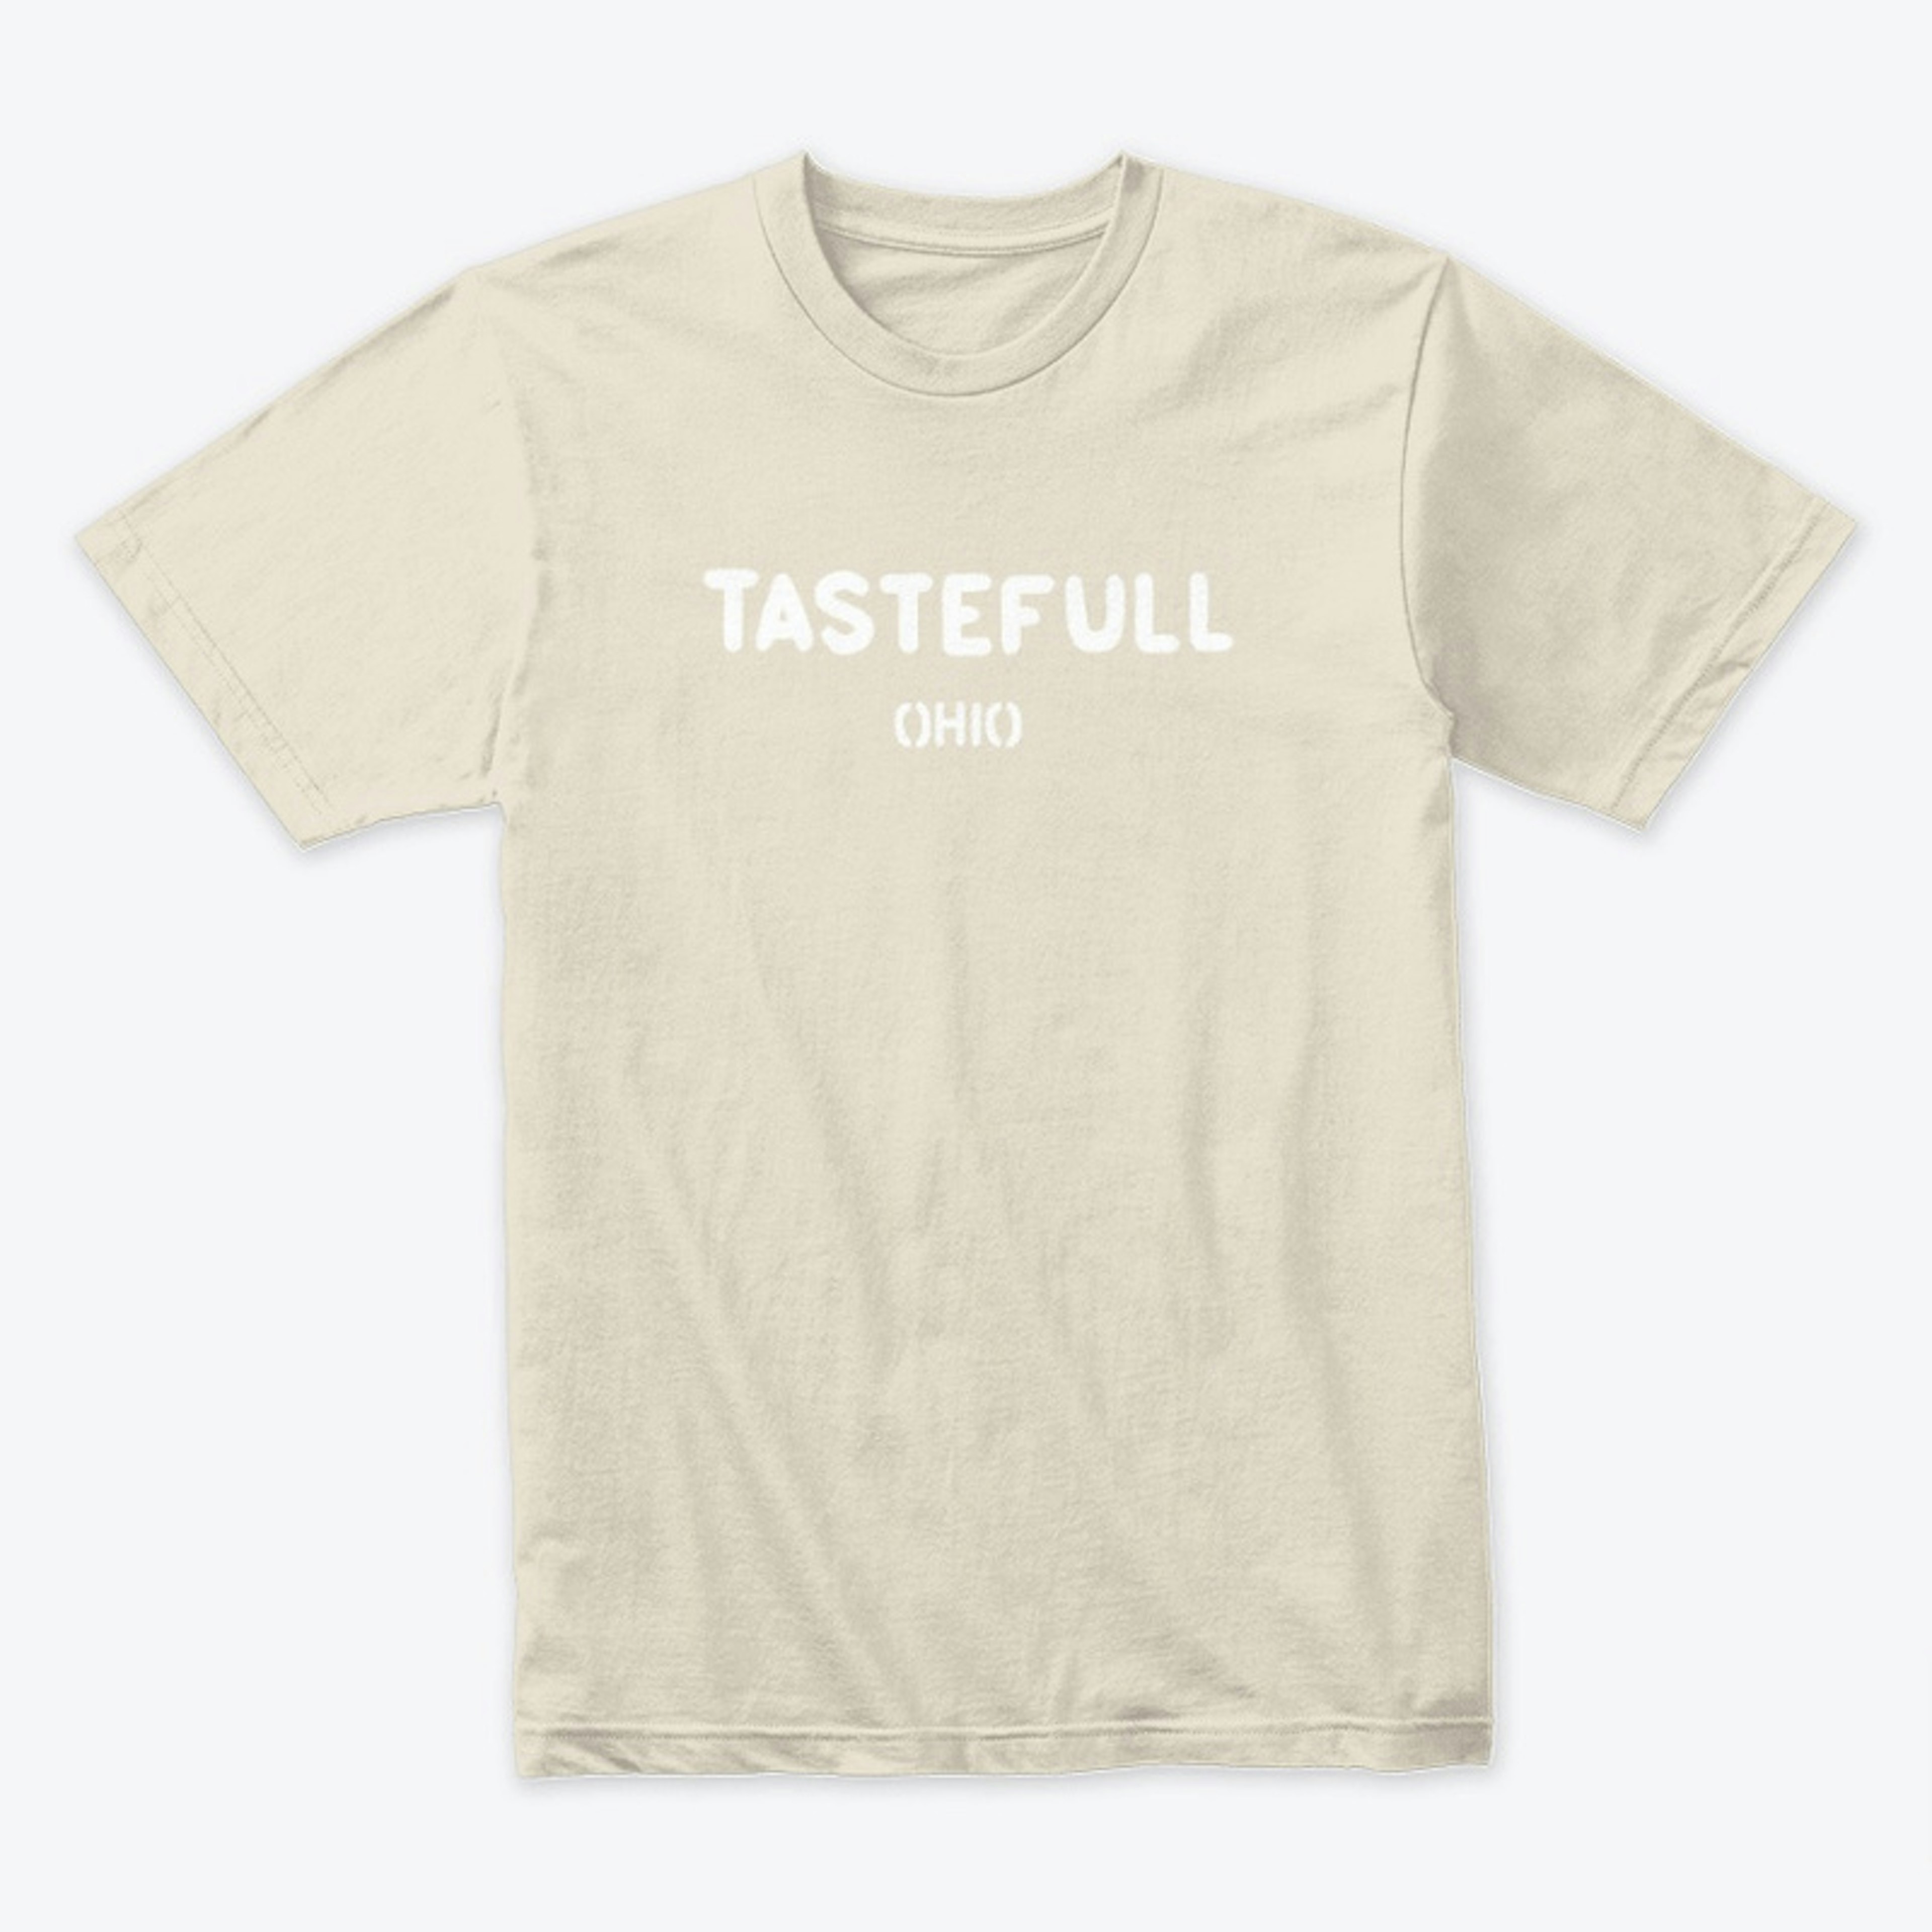 TasteFull Ohio